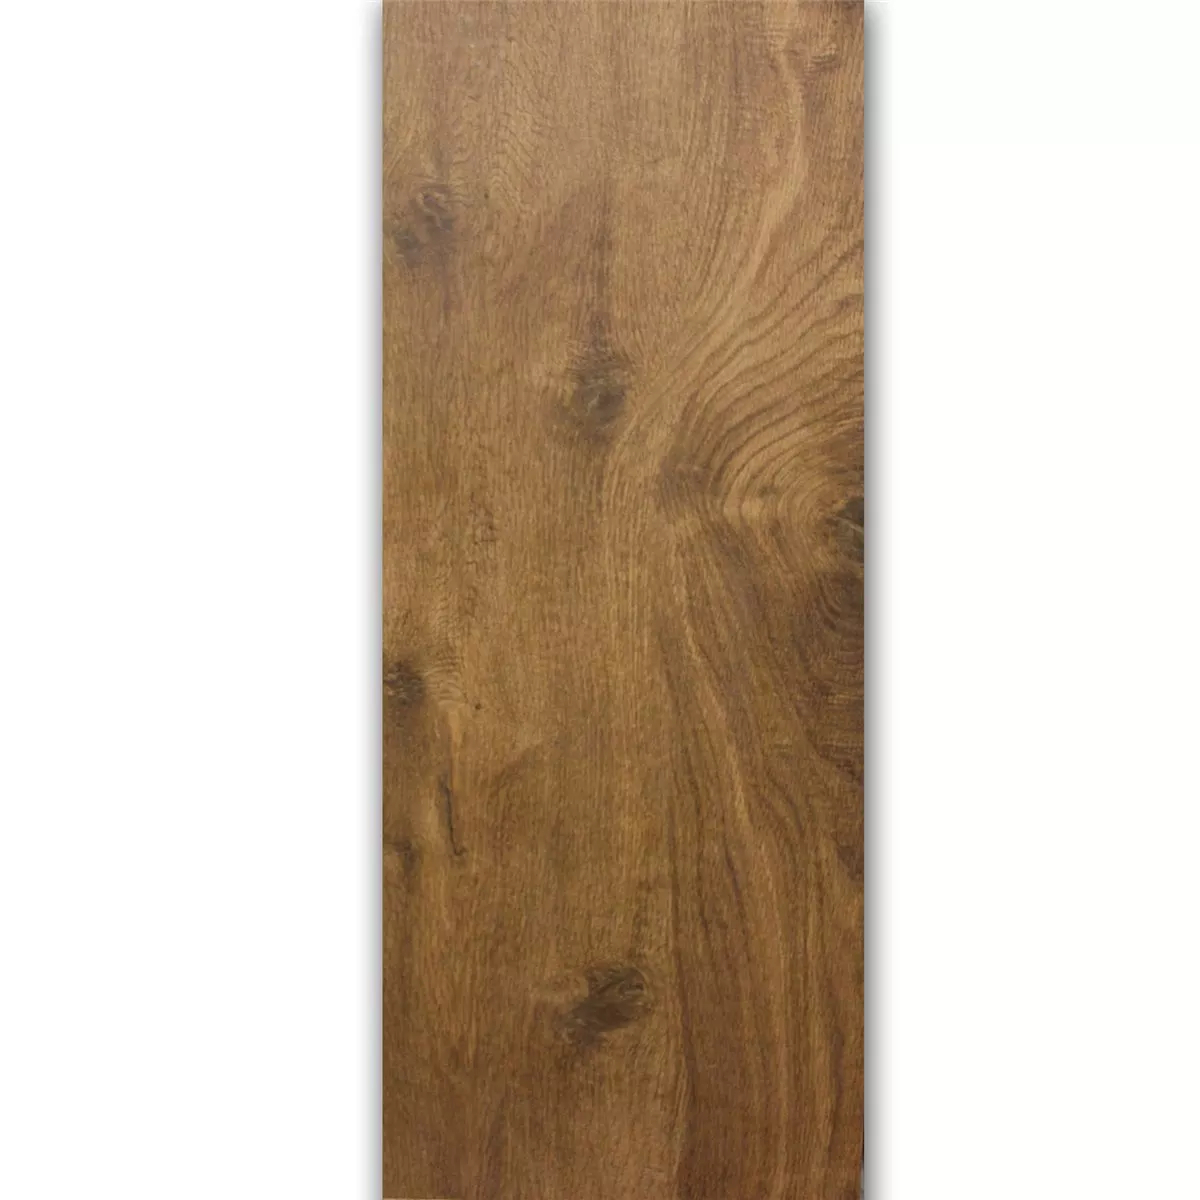 Marazzi TreverkHome Płytki Podłogowe Wygląd Drewna Castagno Rett MJWL 30x120cm